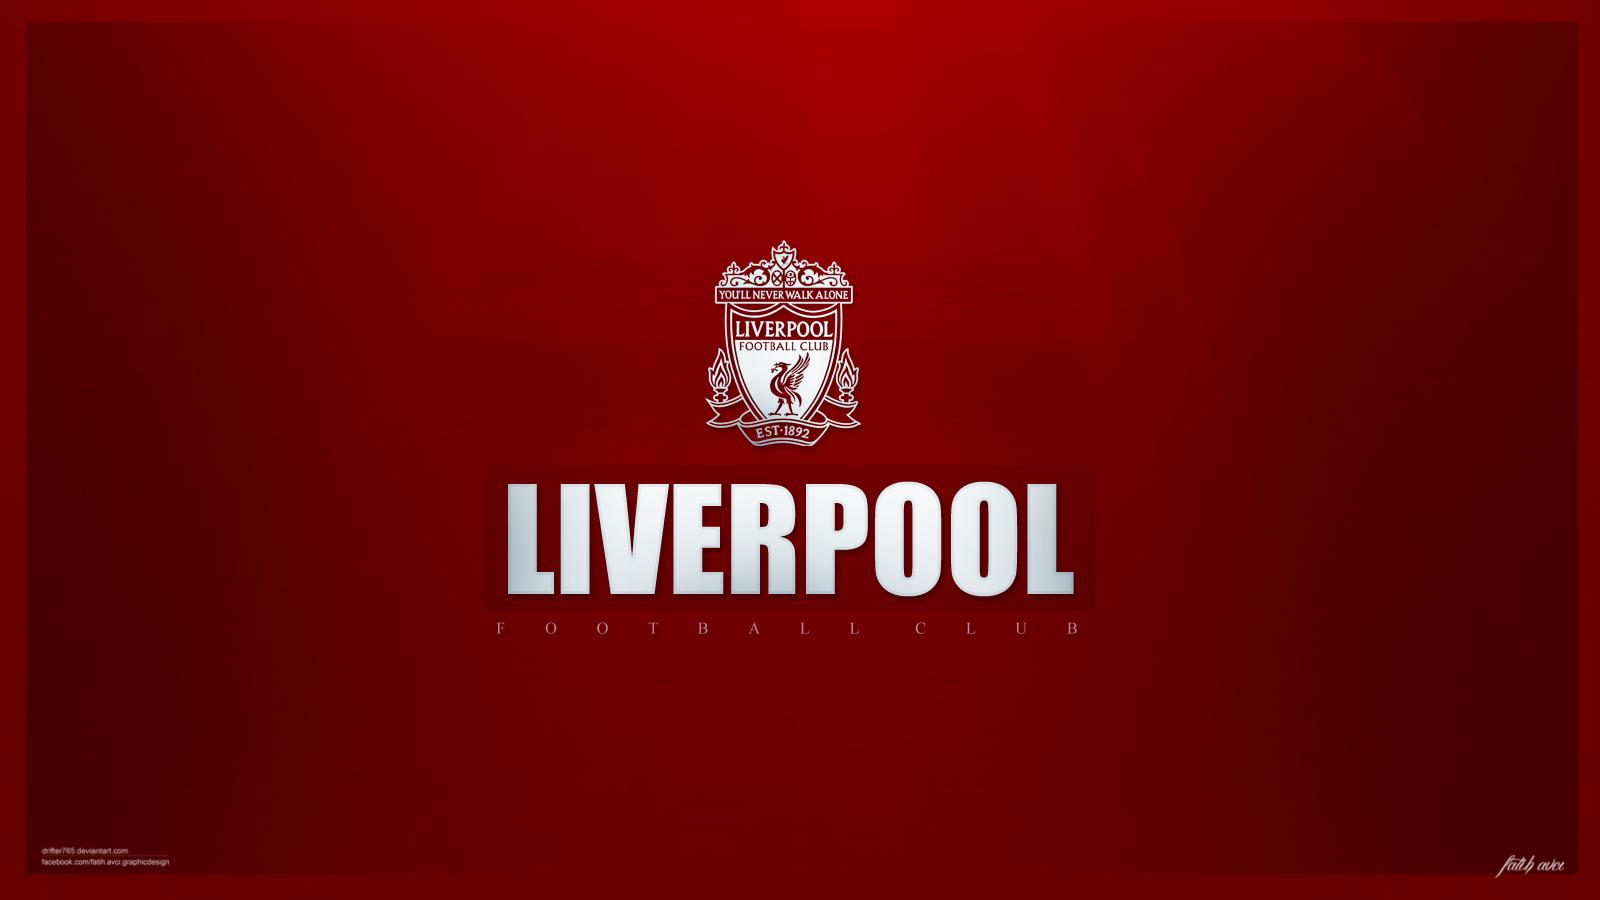 Magnificent Liverpool FC Pics For Desktop: 20 06 2019